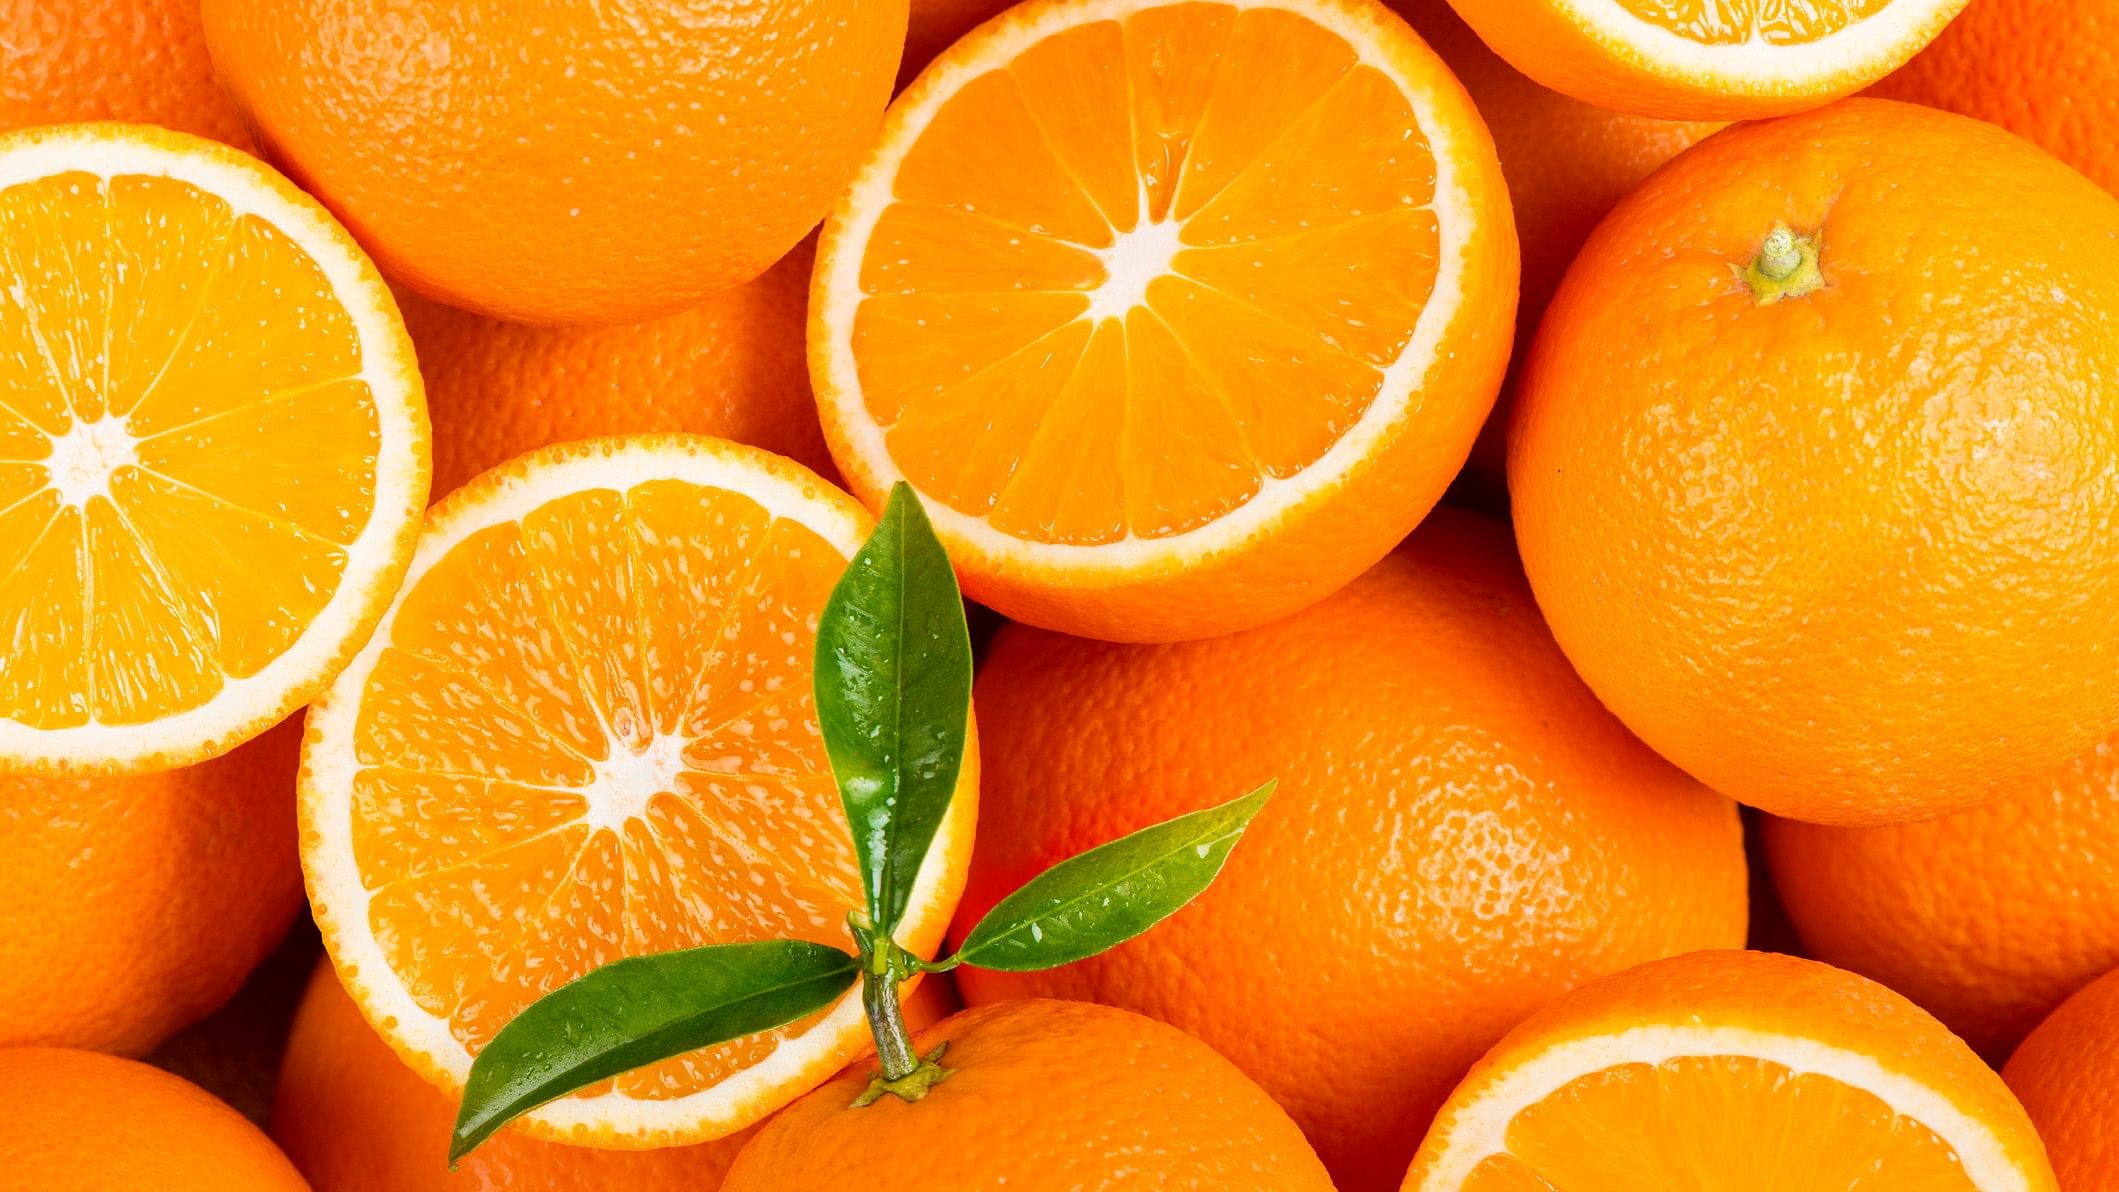 <div class="paragraphs"><p>Representational image for Malda oranges.</p></div>